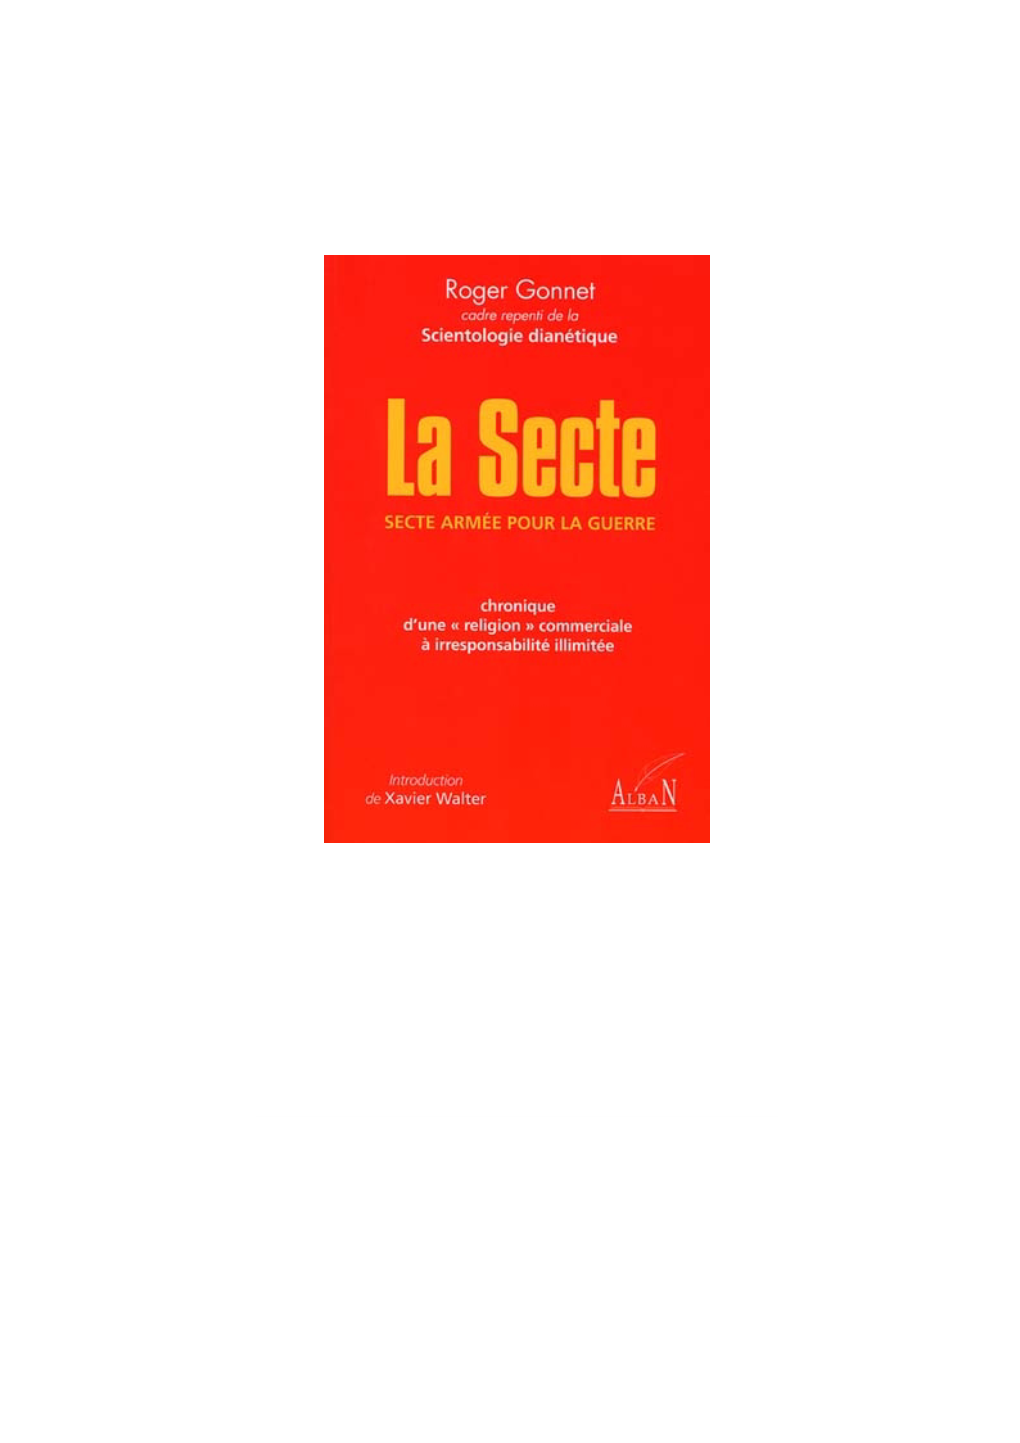 "La Secte" De Roger Gonnet Au Format .Pdf